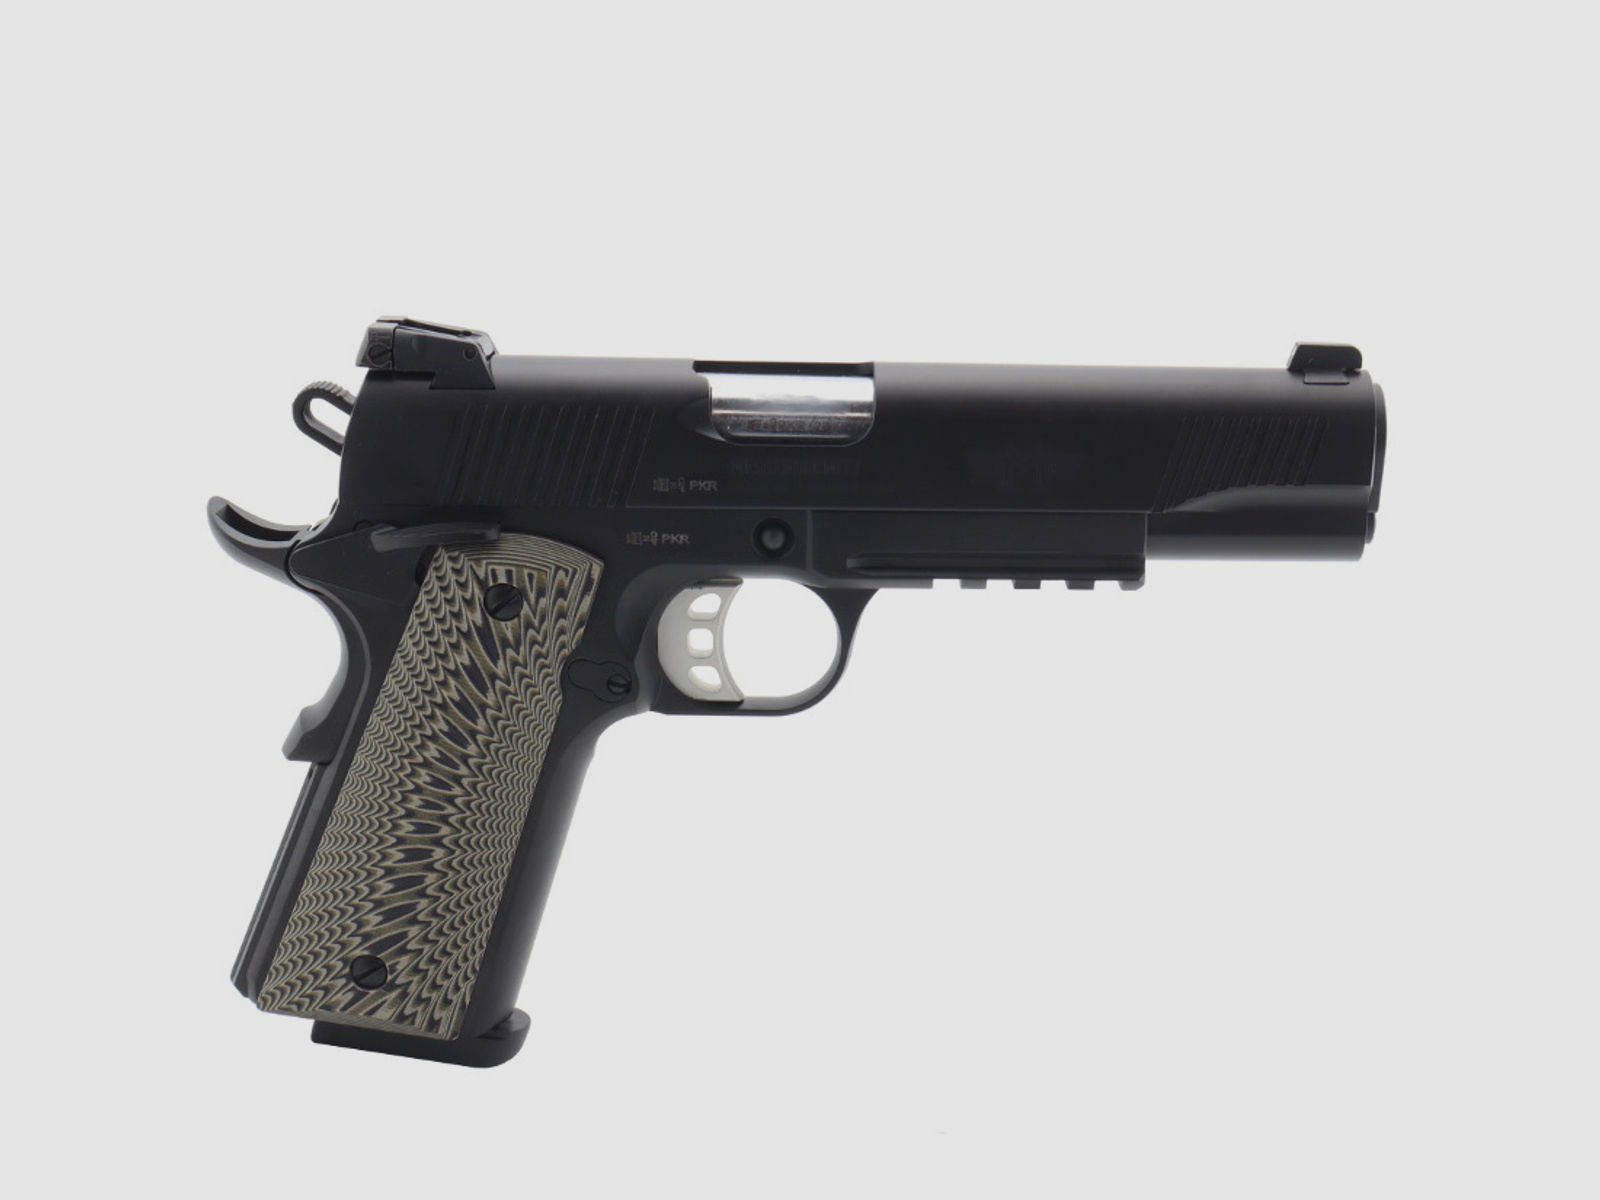  Messerschmitt Pistole ME 1911 Black 5" Kaliber: 9mm Luger 